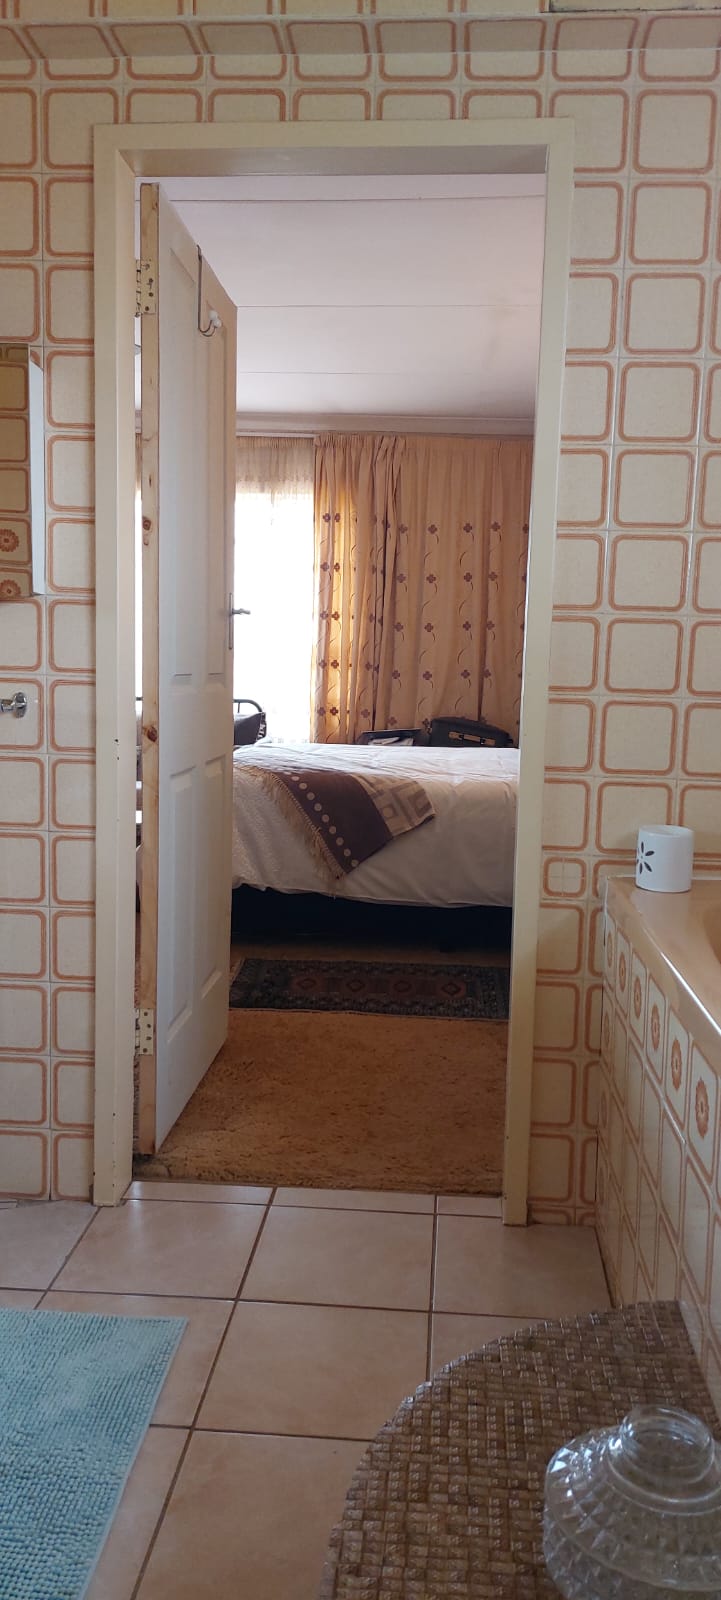 3 Bedroom Property for Sale in Zuurbekom Gauteng